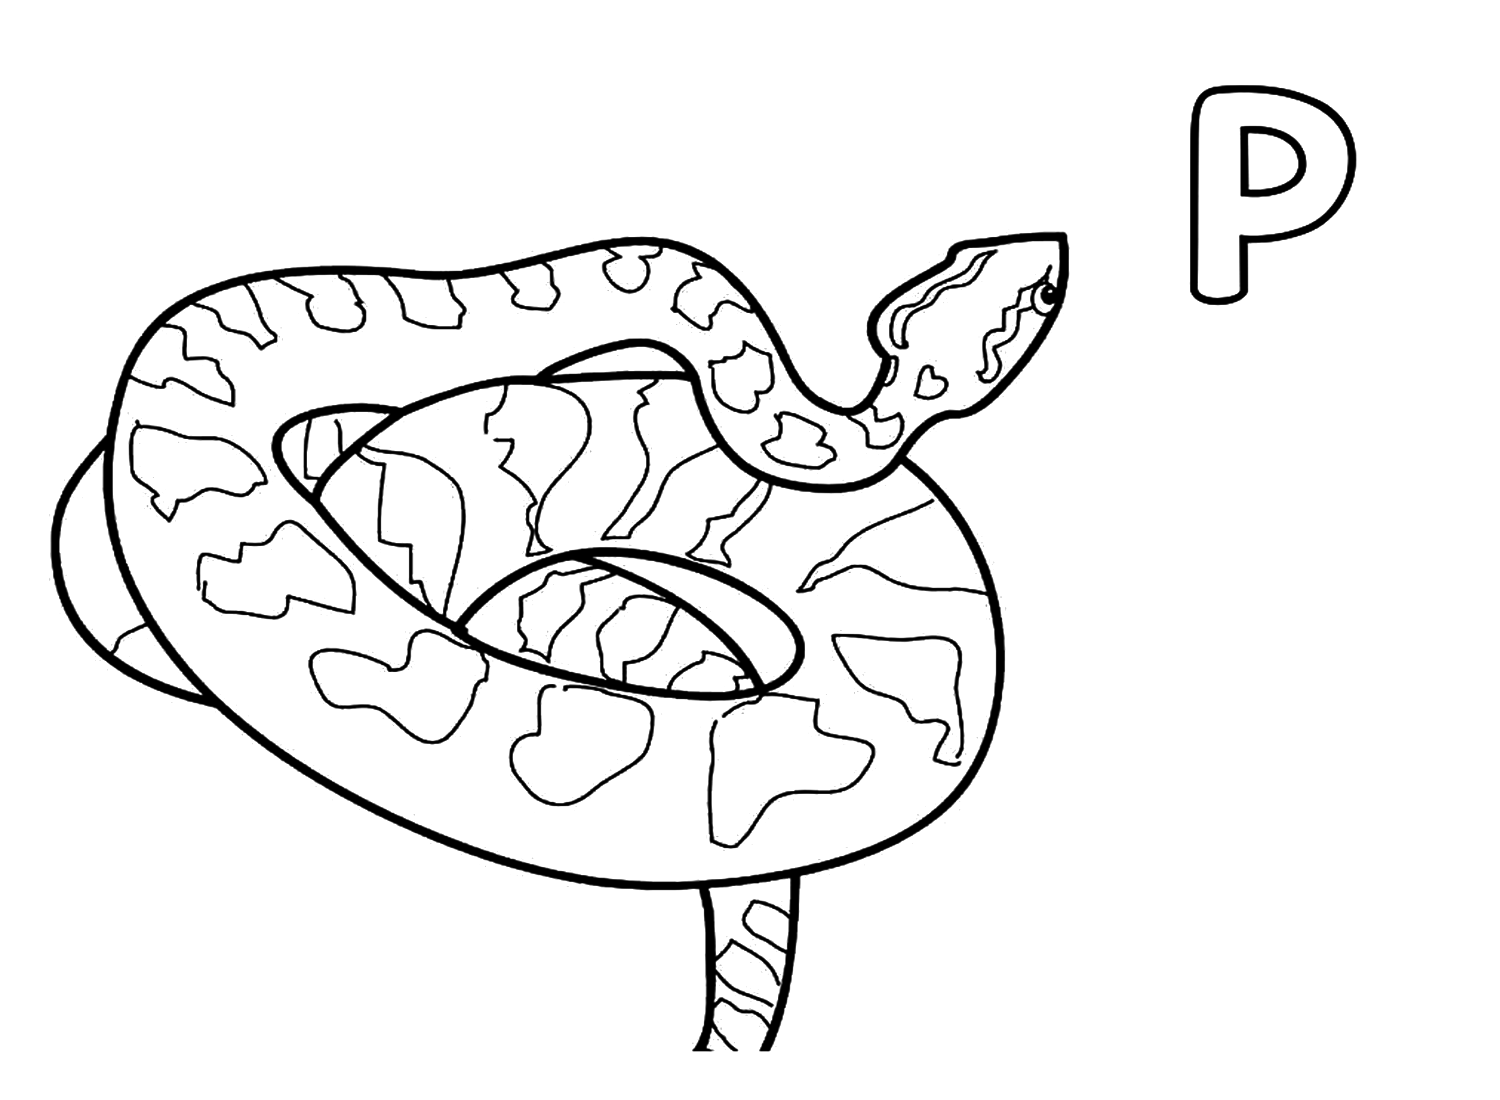 Letra P para Python Página para colorear de Python